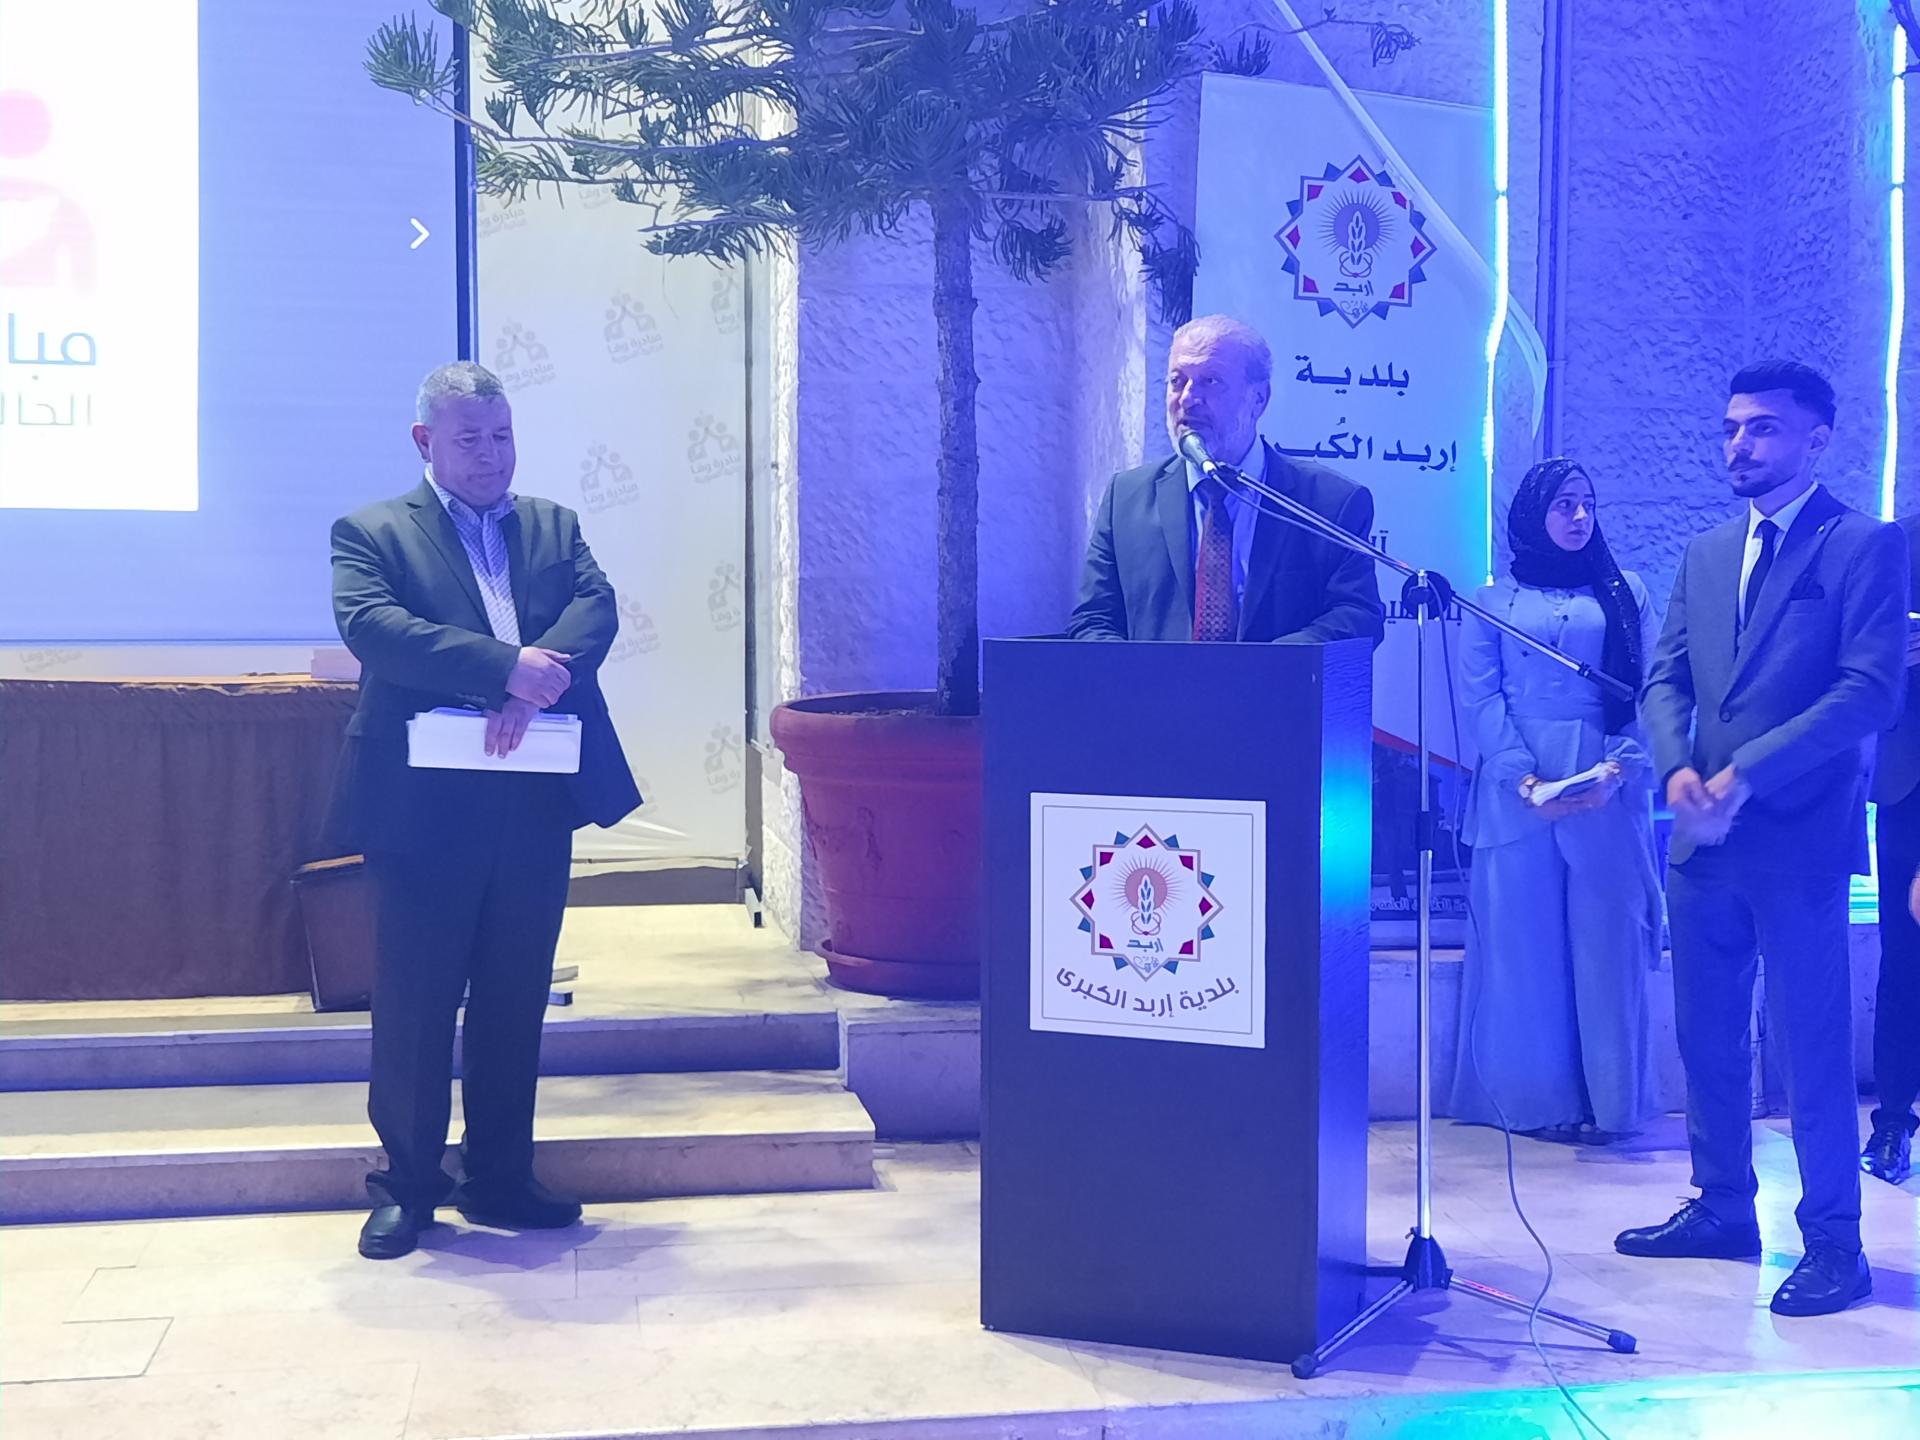 رئيس بلدية اربد الكبرى الدكتور نبيل الكوفحي يلقي كلمته في افتتاح المبادرة (تصوير إسراء الأعرج-اربد)